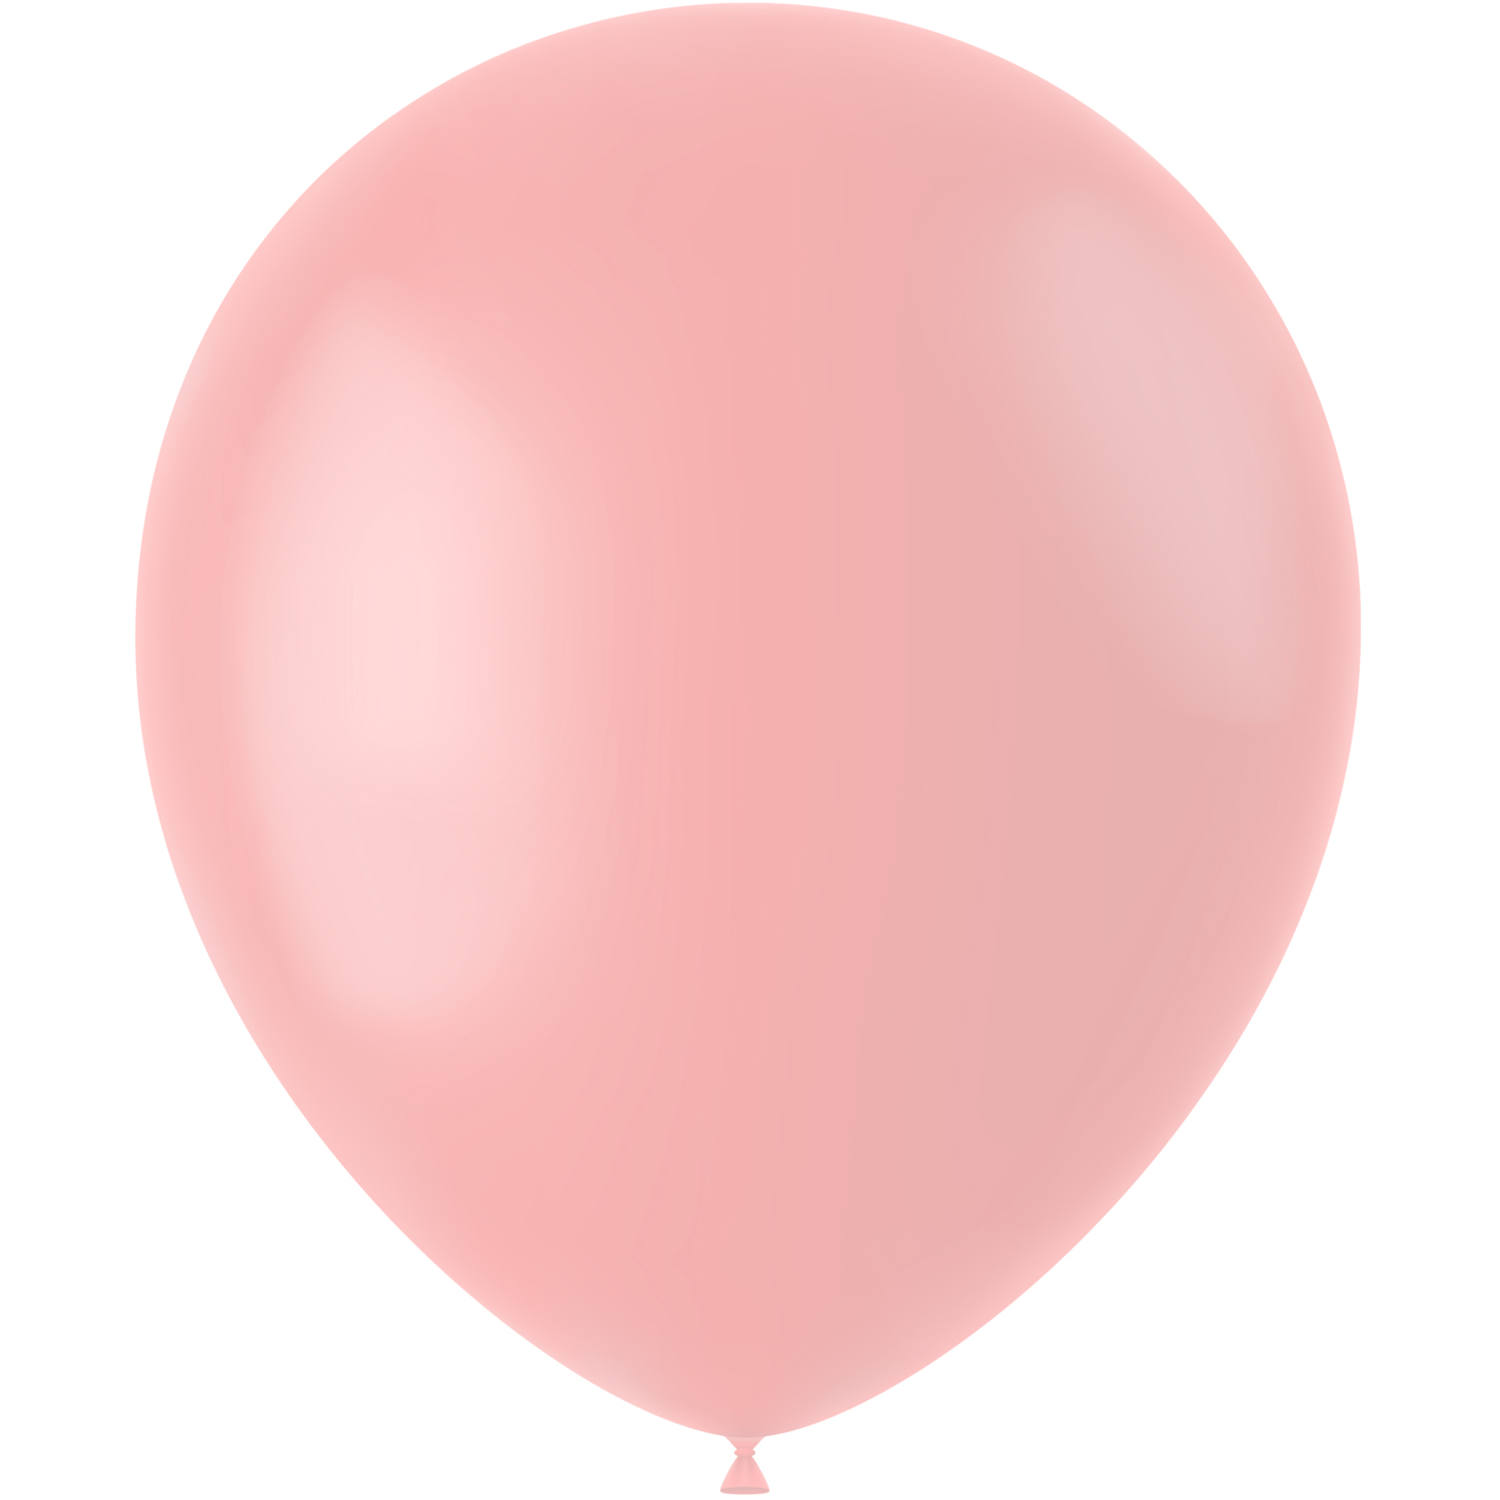 Balloner 50 stk. (Mat Pulver Pink, 33cm)